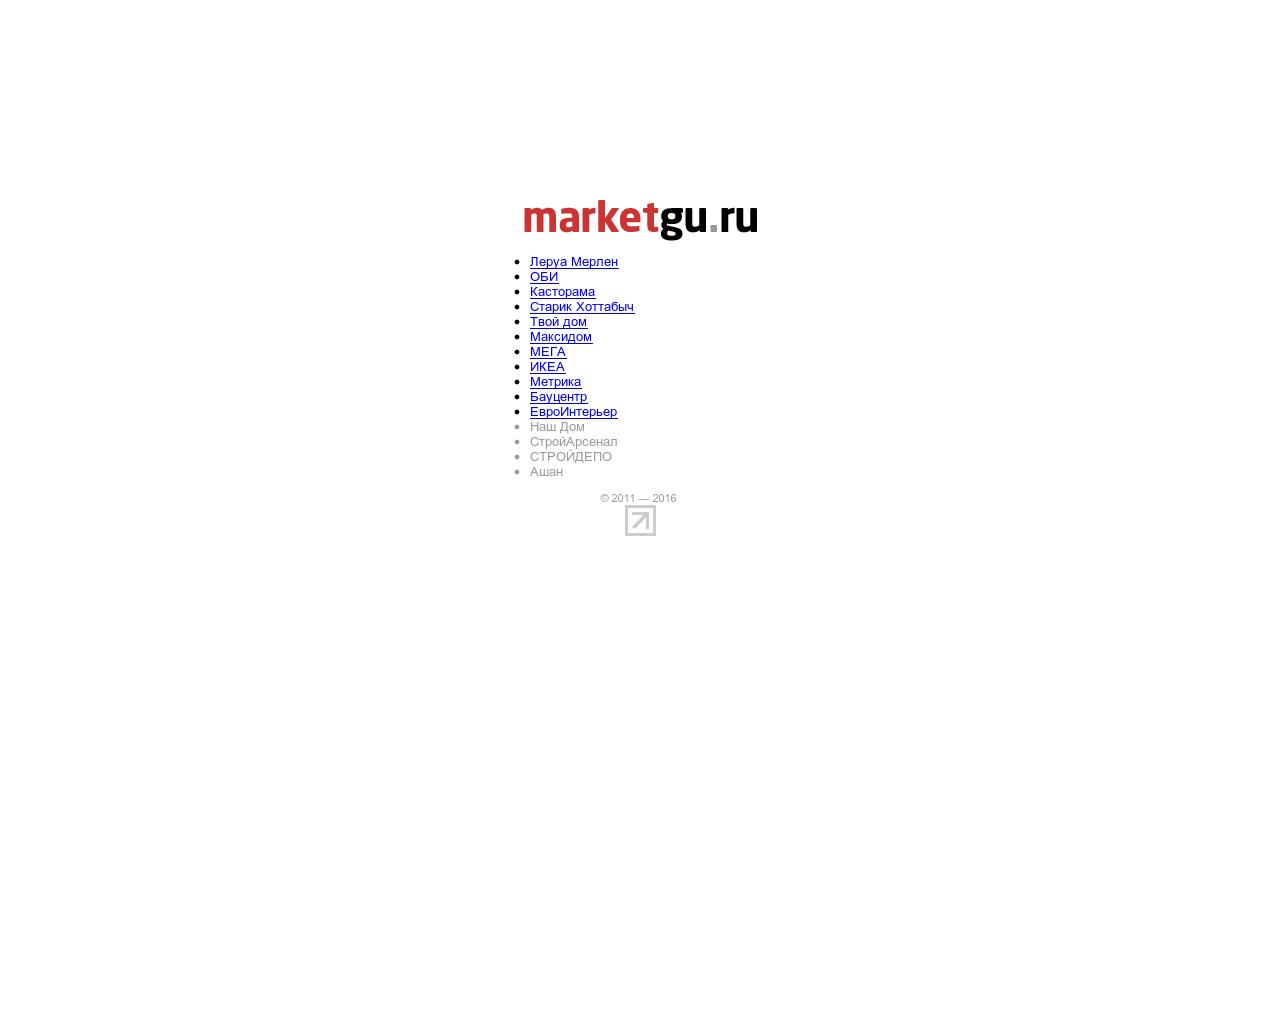 Изображение сайта marketgu.ru в разрешении 1280x1024